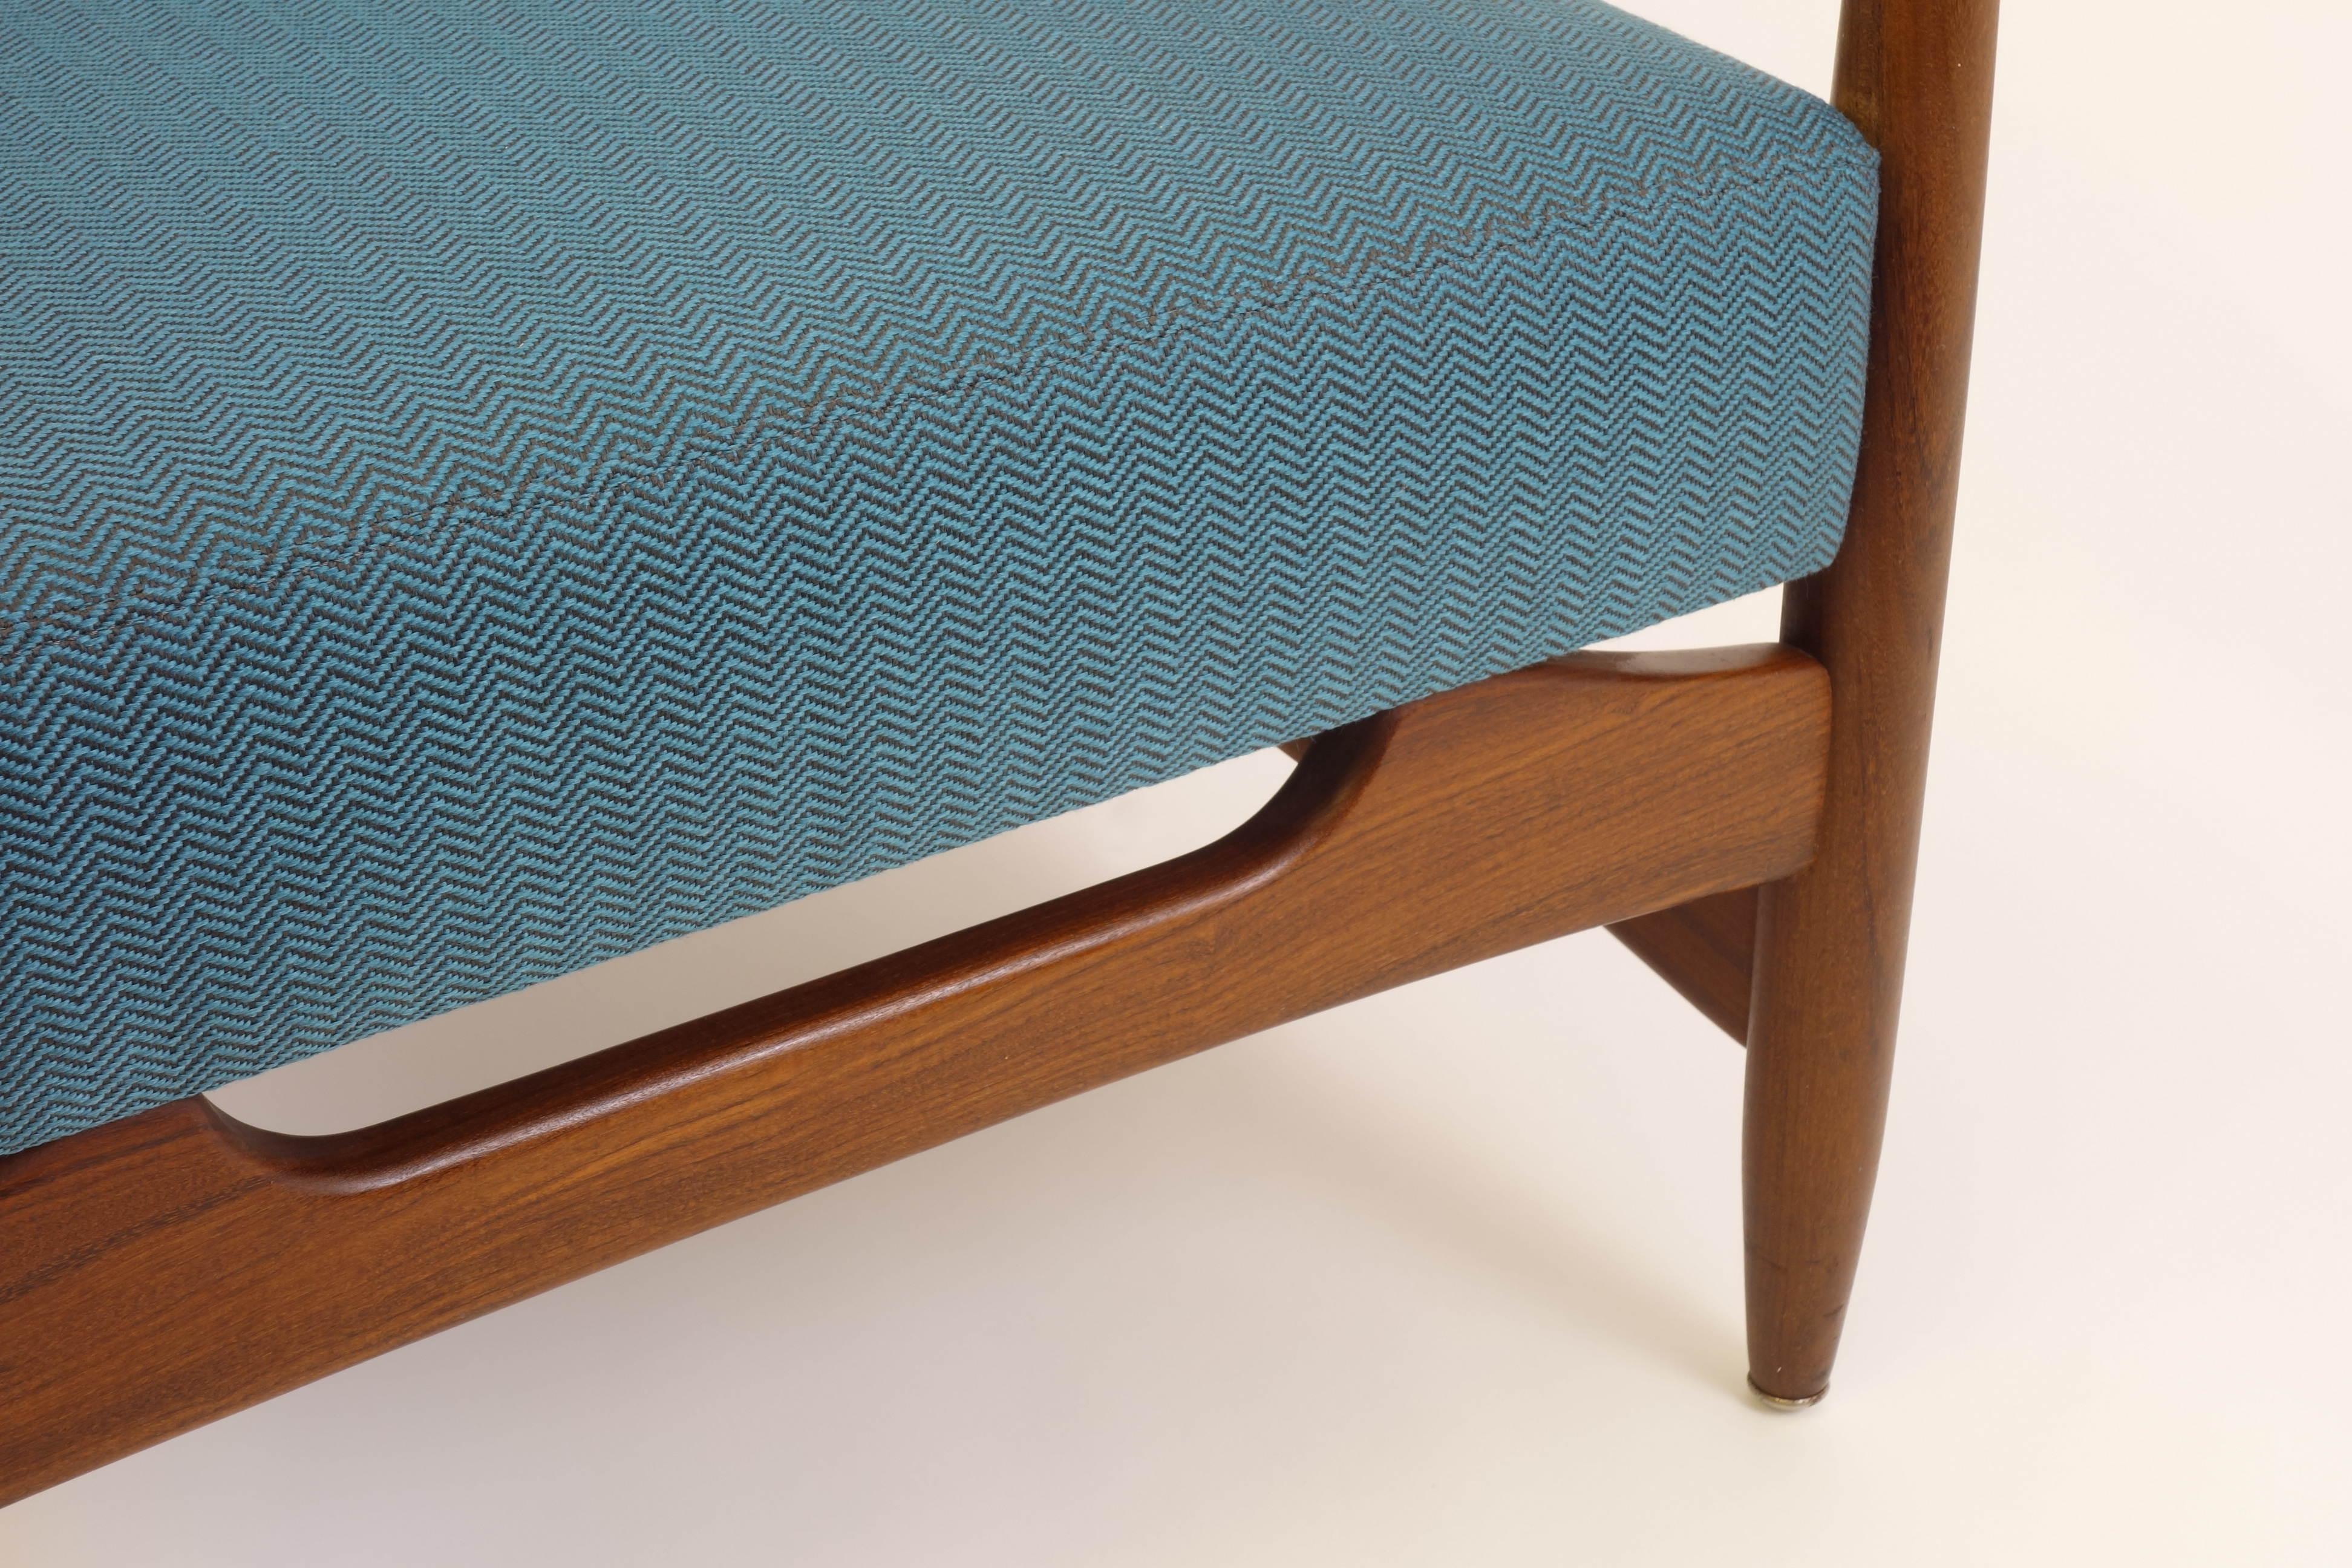 Ein bezaubernder Sessel mit authentischem dänischen Design in einer mehr als geschmackvollen Farbkomposition. Die Polsterung wurde neu mit einem tealfarbenen Stoff mit Fischgrätmuster bezogen, der einen subtilen Kontrast zum warmen Holzton bildet.